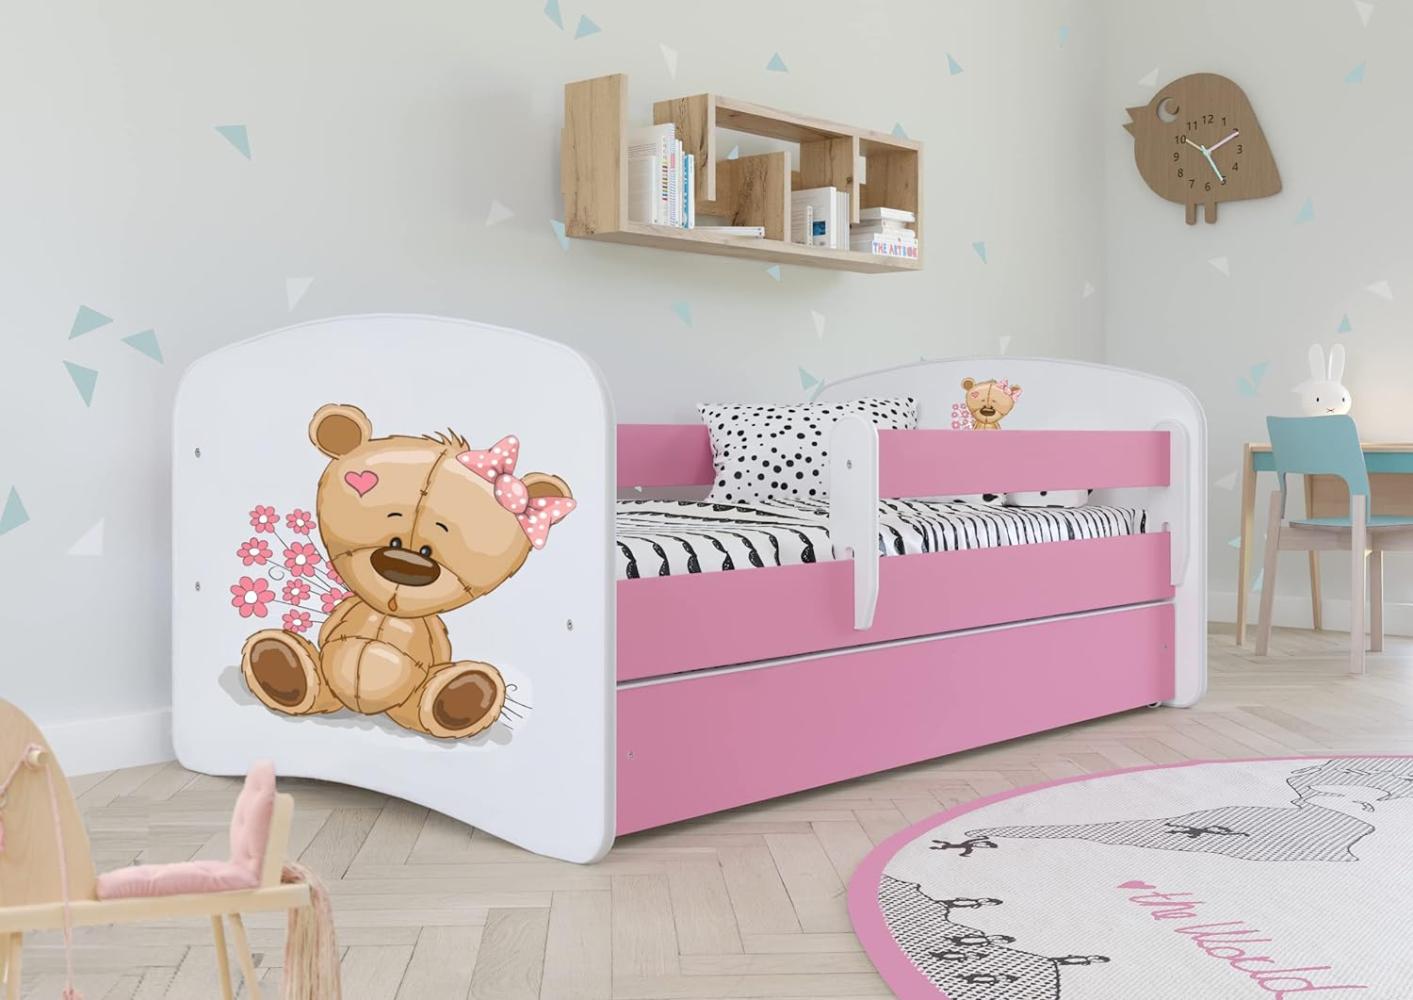 Kocot Kids 'Teddybär mit Blumen' Einzelbett pink/weiß 80x160 cm inkl. Rausfallschutz, Matratze, Schublade und Lattenrost Bild 1